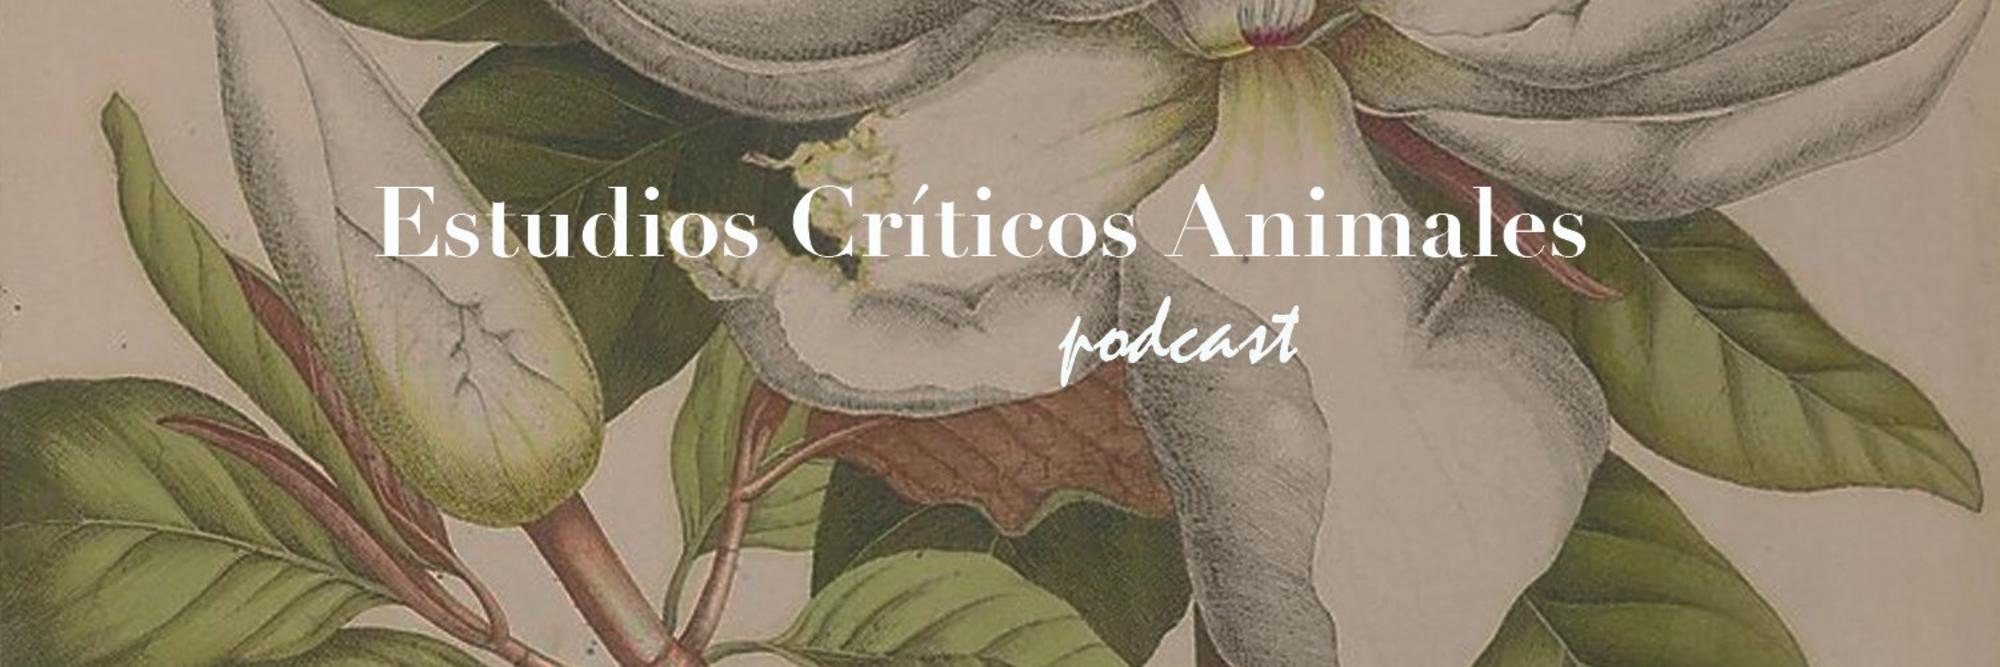 Estudios Críticos Animales podcast